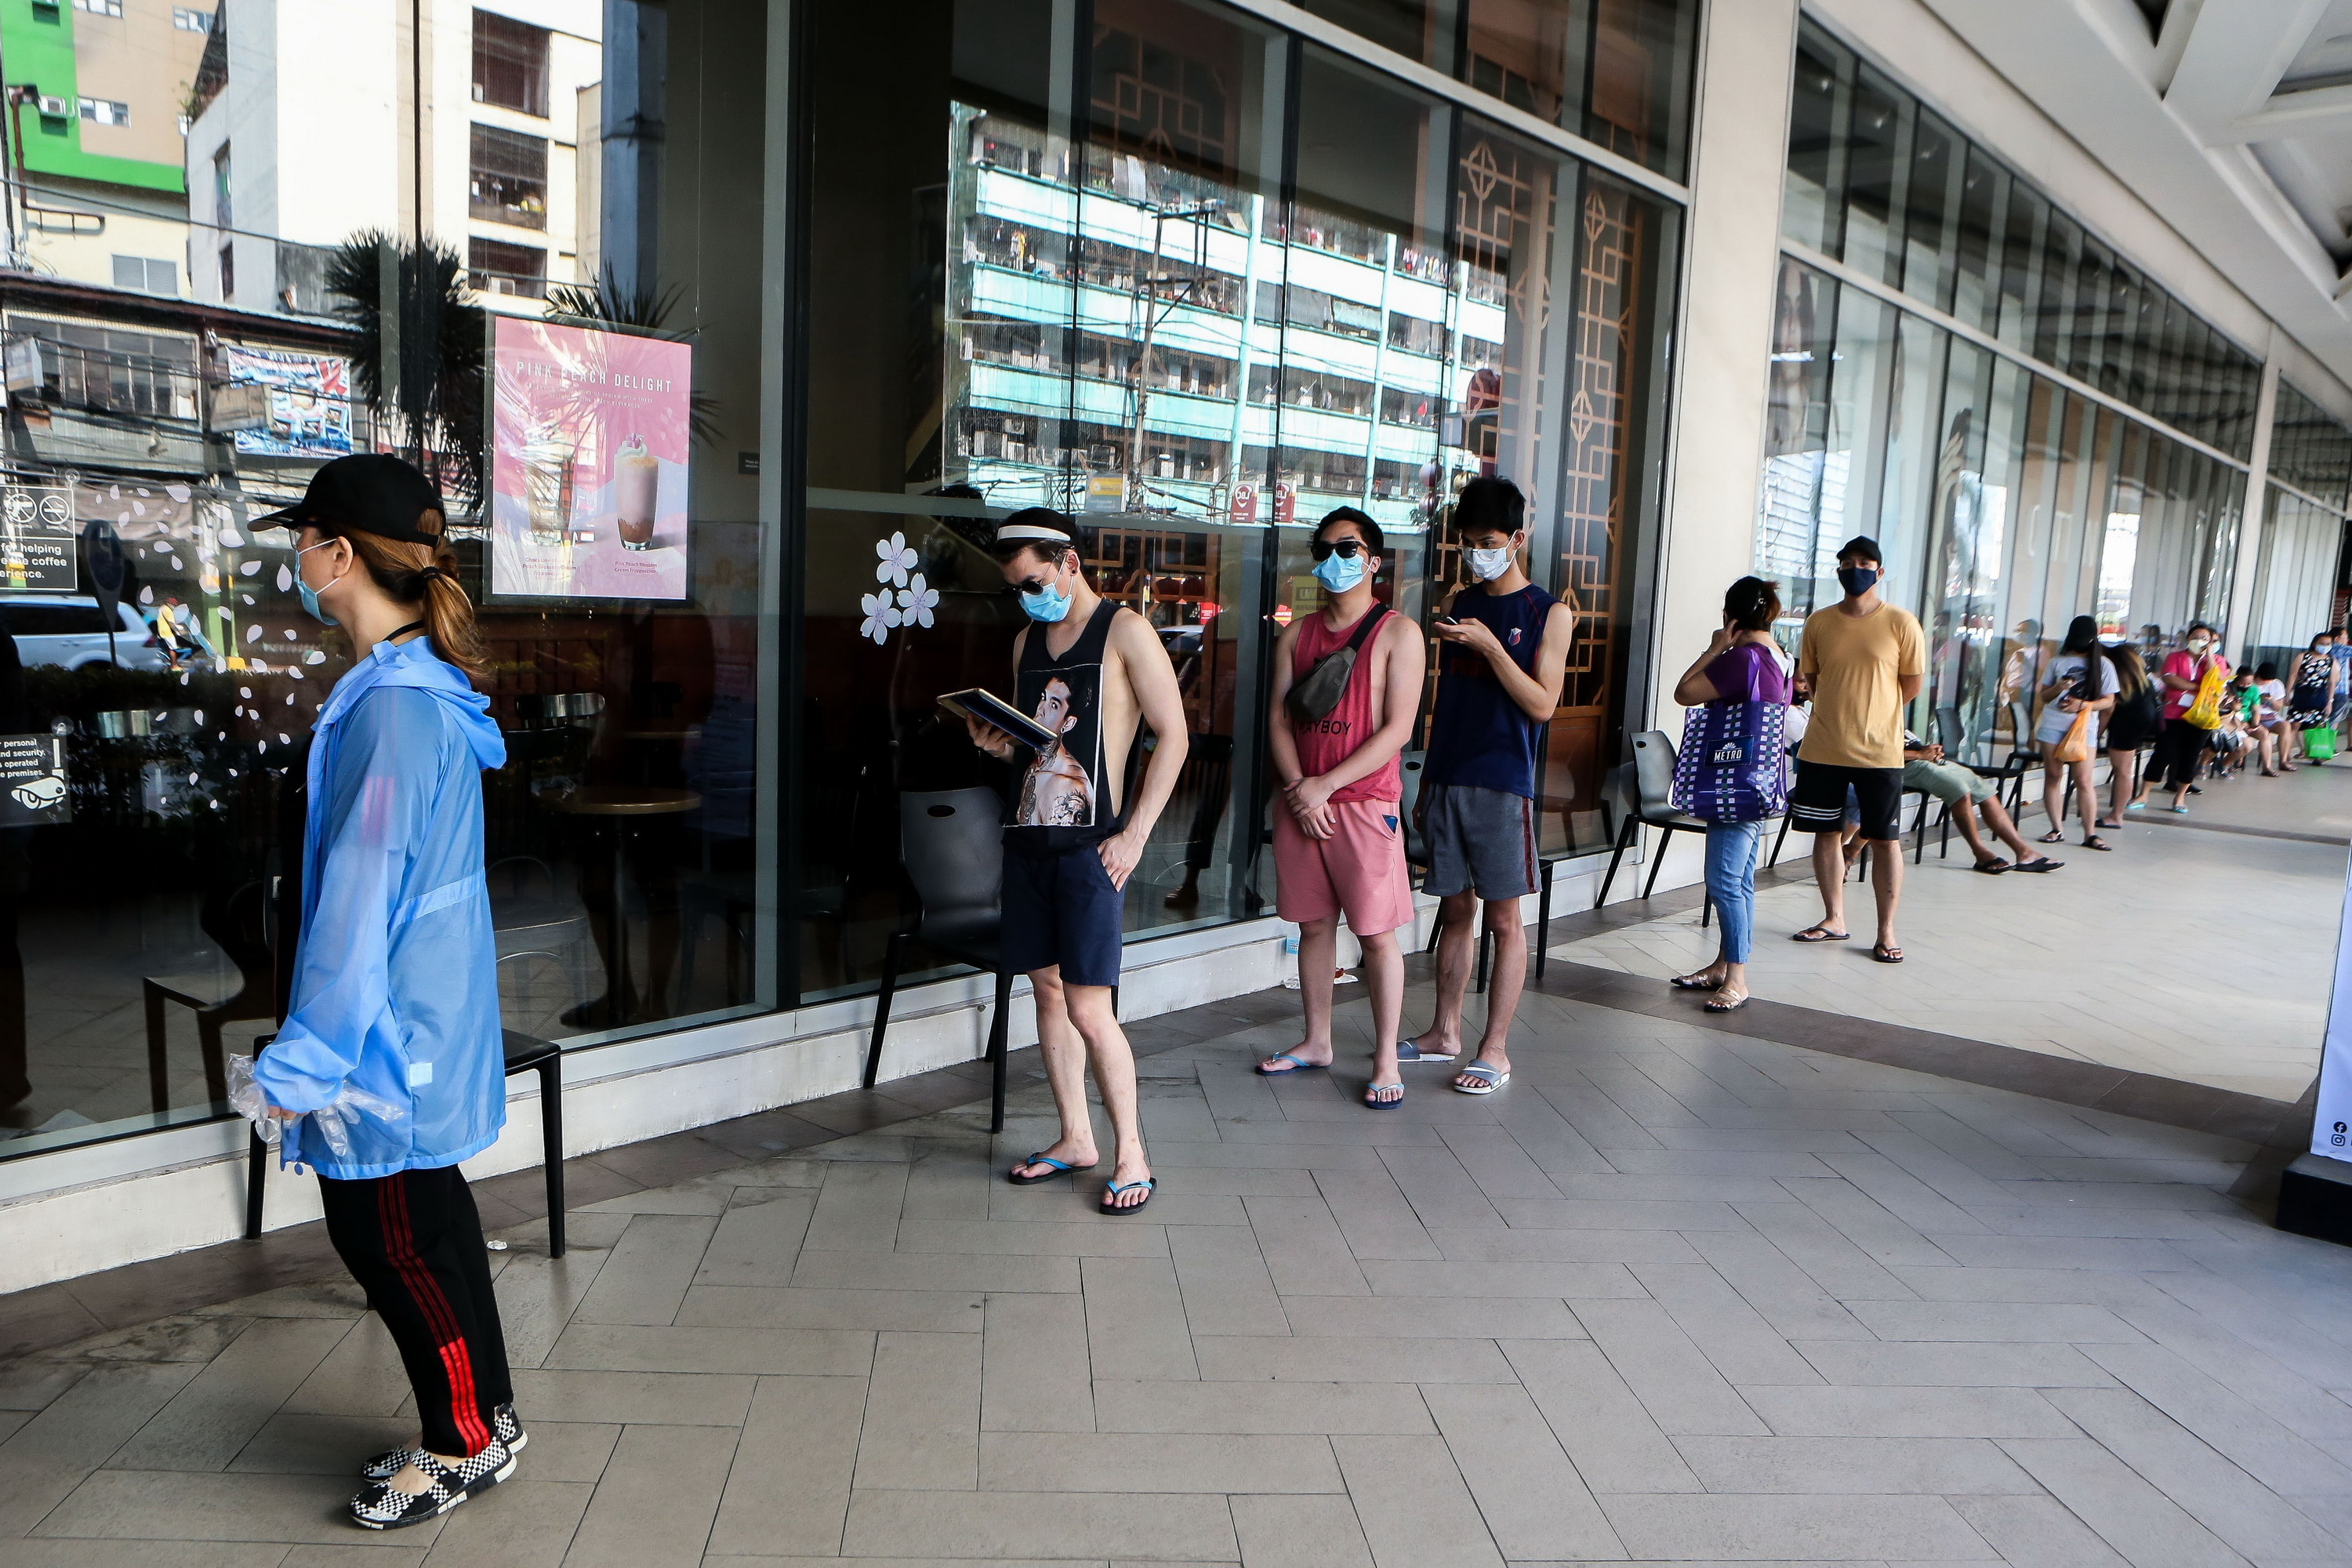  Người dân đeo khẩu trang phòng lây nhiễm COVID-19 khi xếp hàng bên ngoài một cửa hiệu ở Manila, Philippines ngày 11/4/2020. (Ảnh: THX/TTXVN)